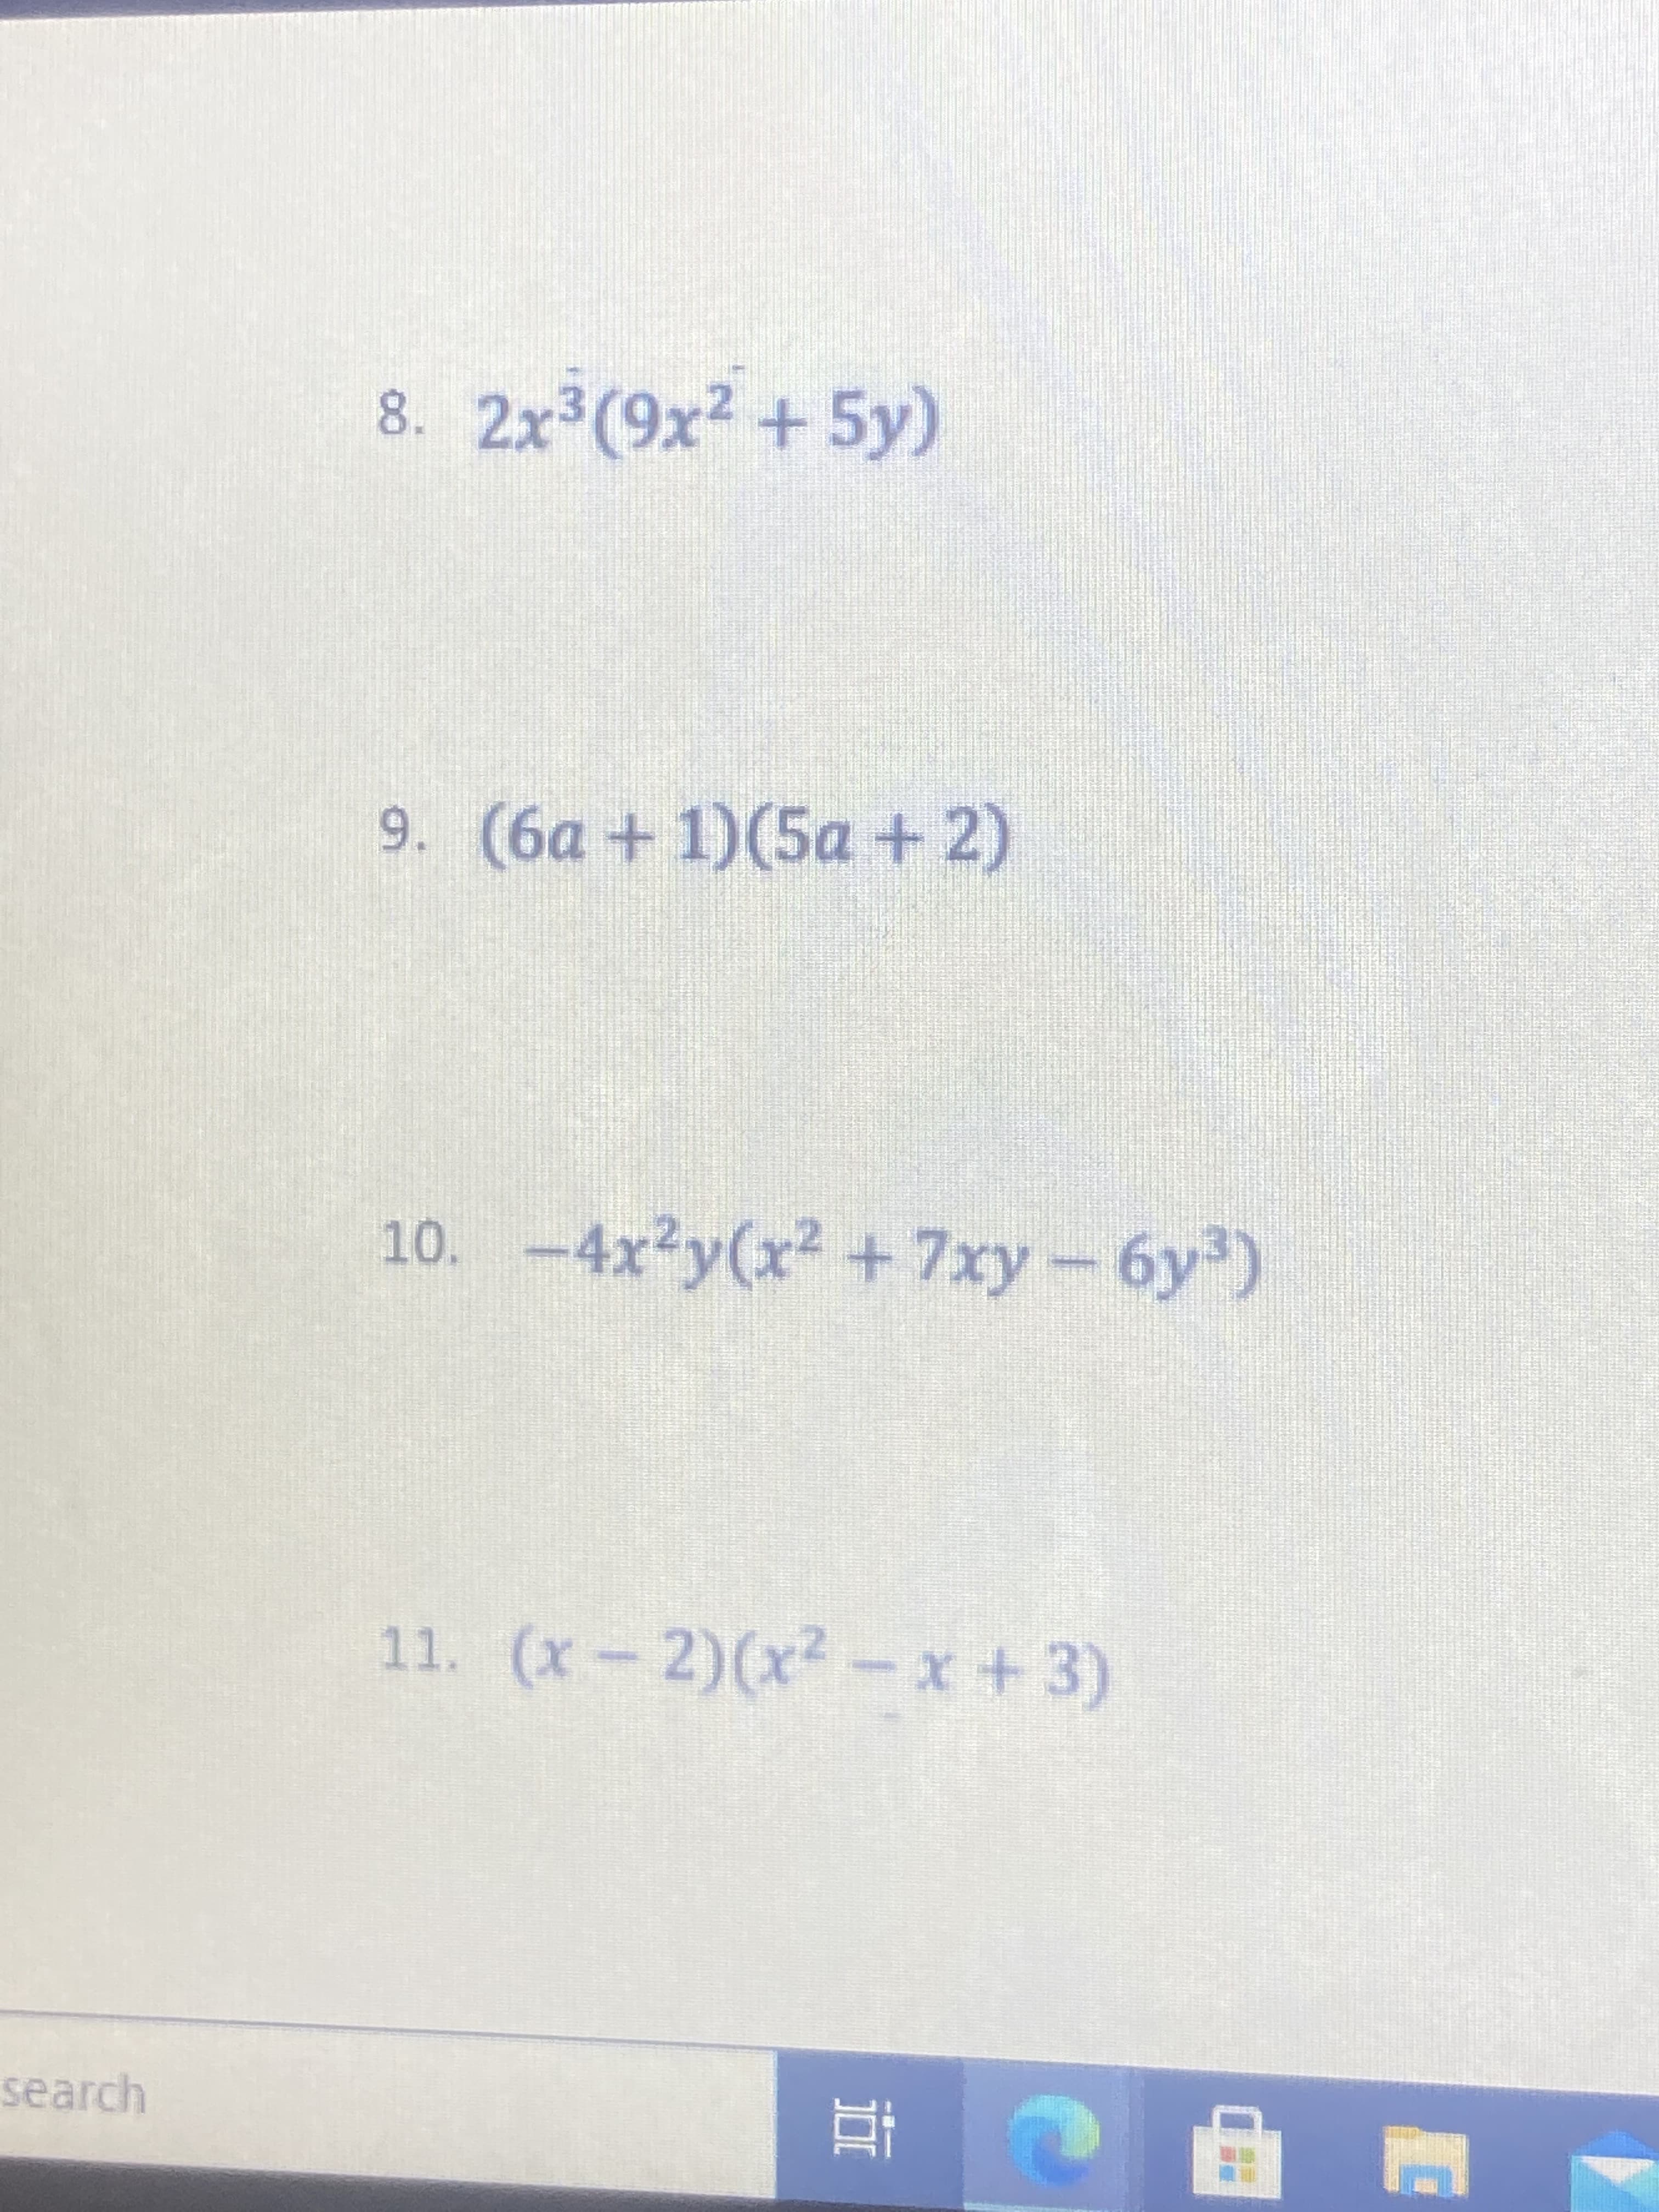 DI
8. 2x3(9x2 +5y)
9. (6a+1)(5a+2)
10. -4x²y(x² +7xy-6y)
11. (x-2)(x²
search
